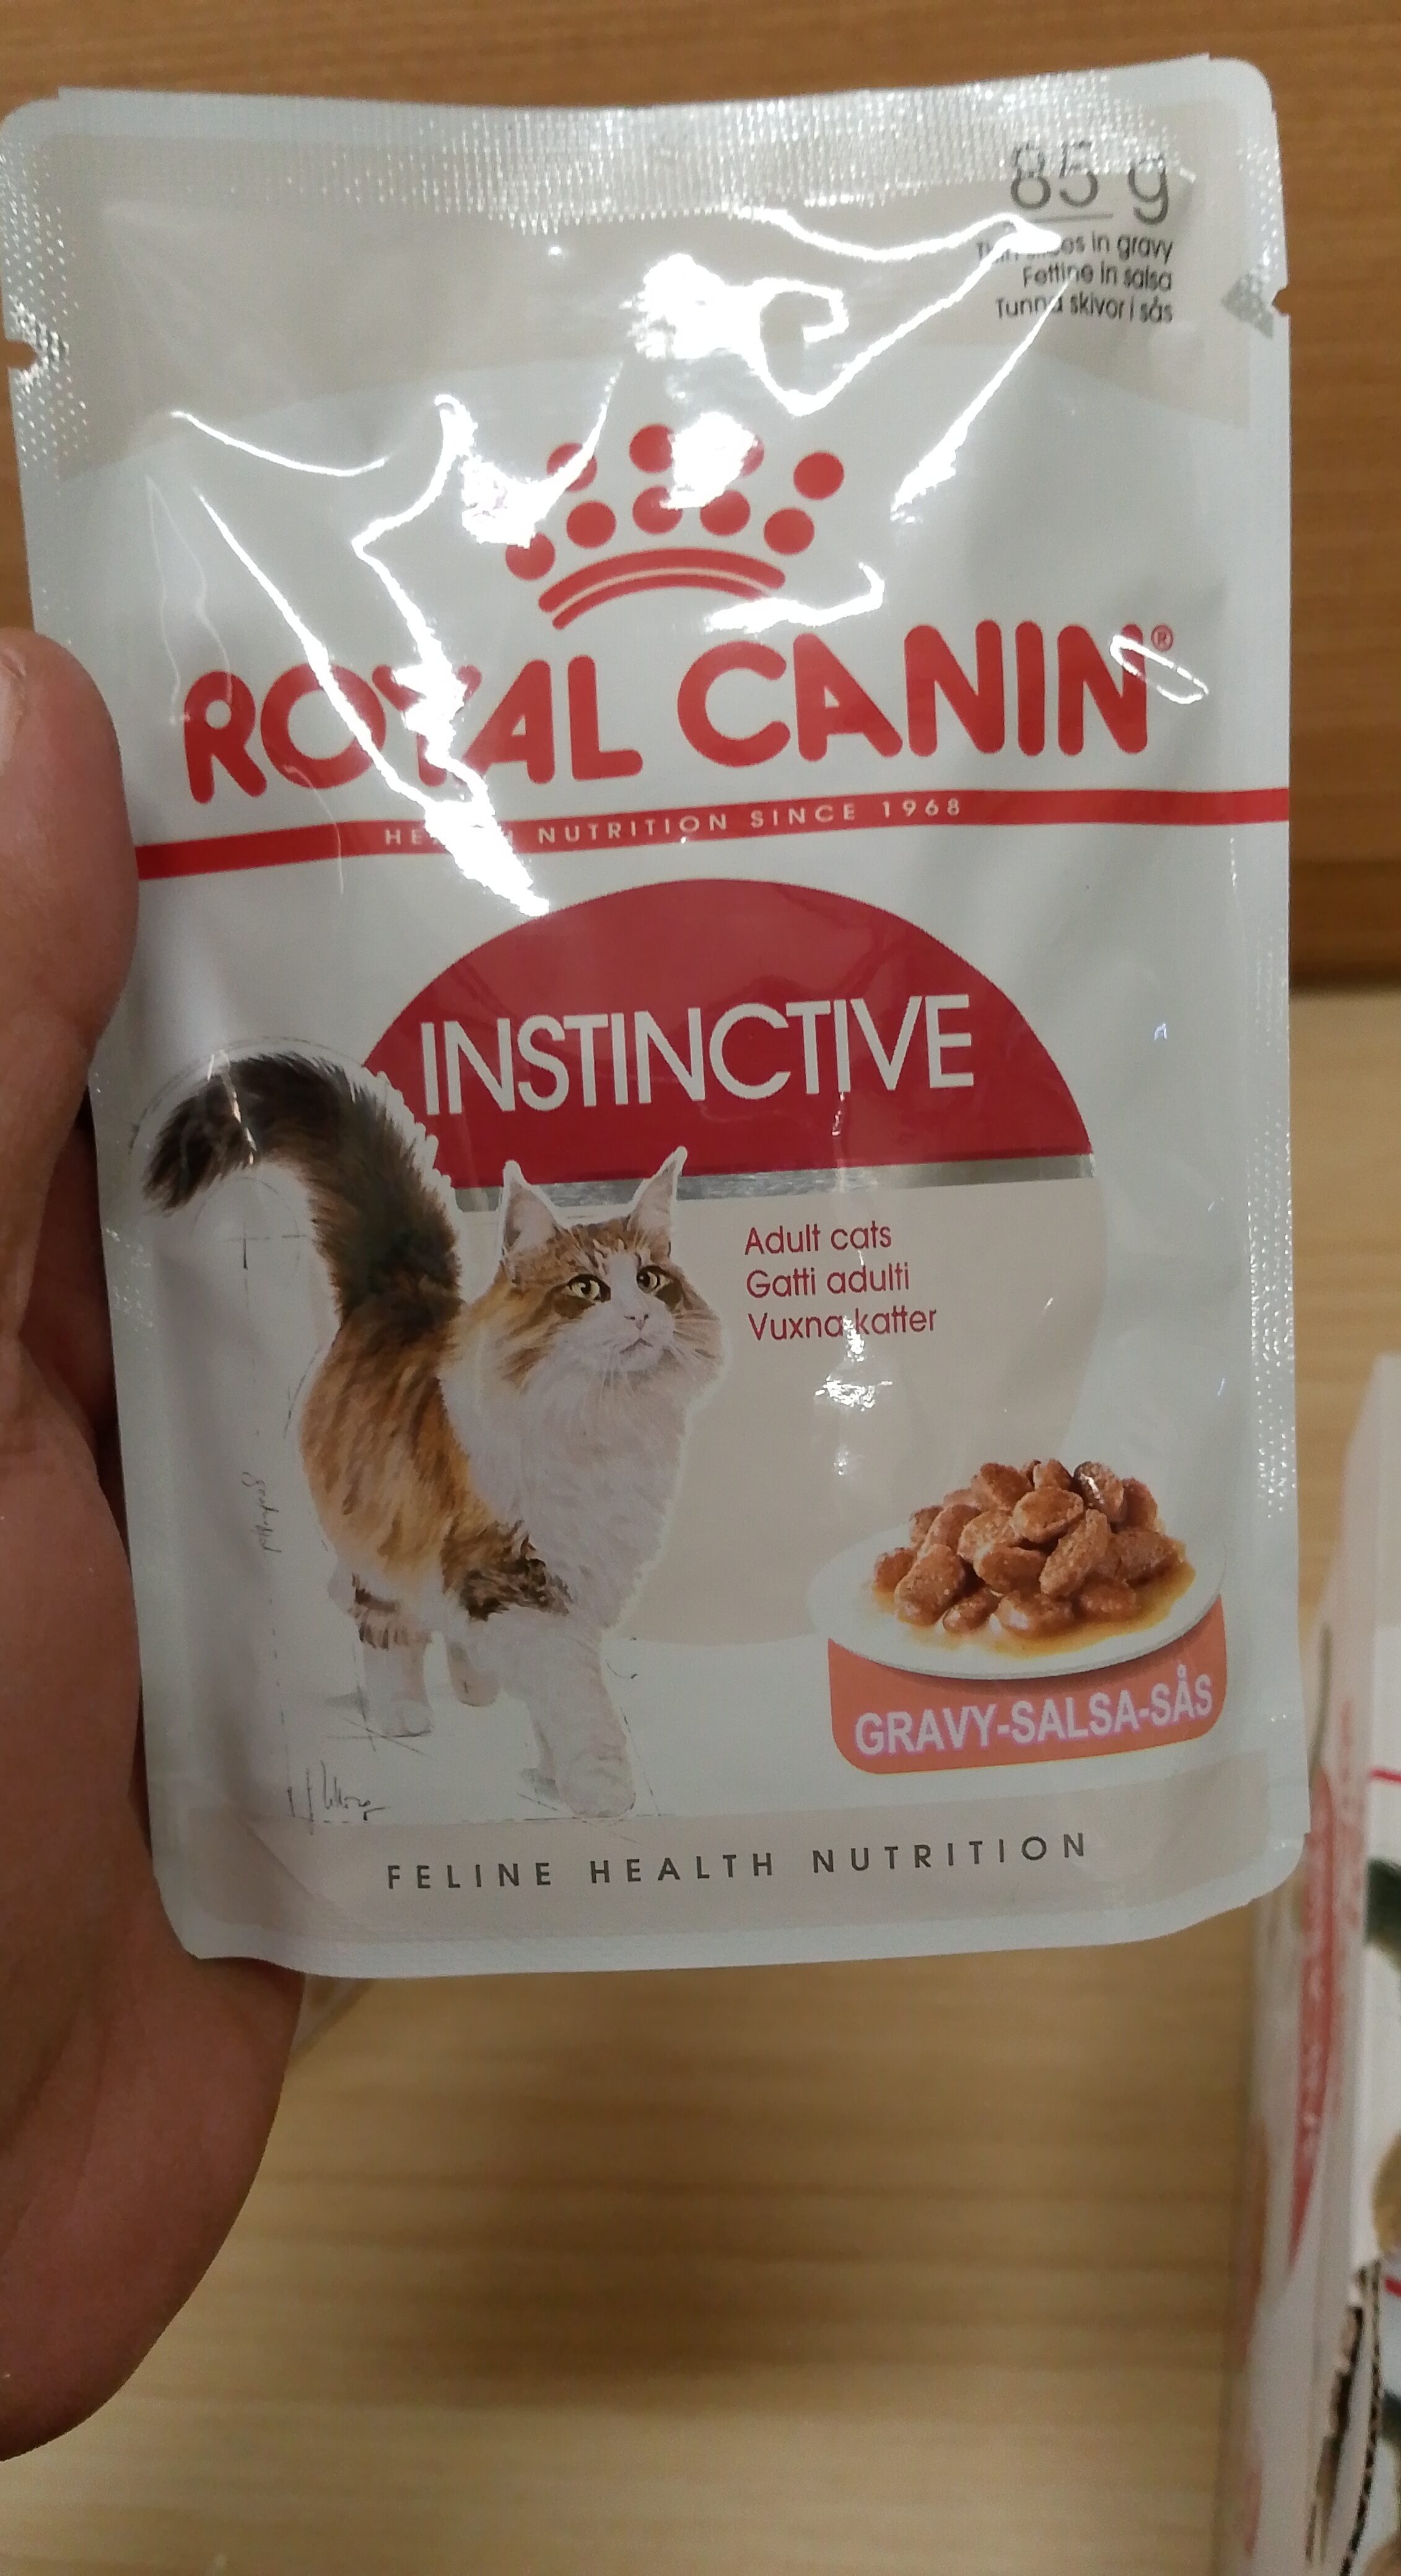 Royal canin instinctive - Product - en